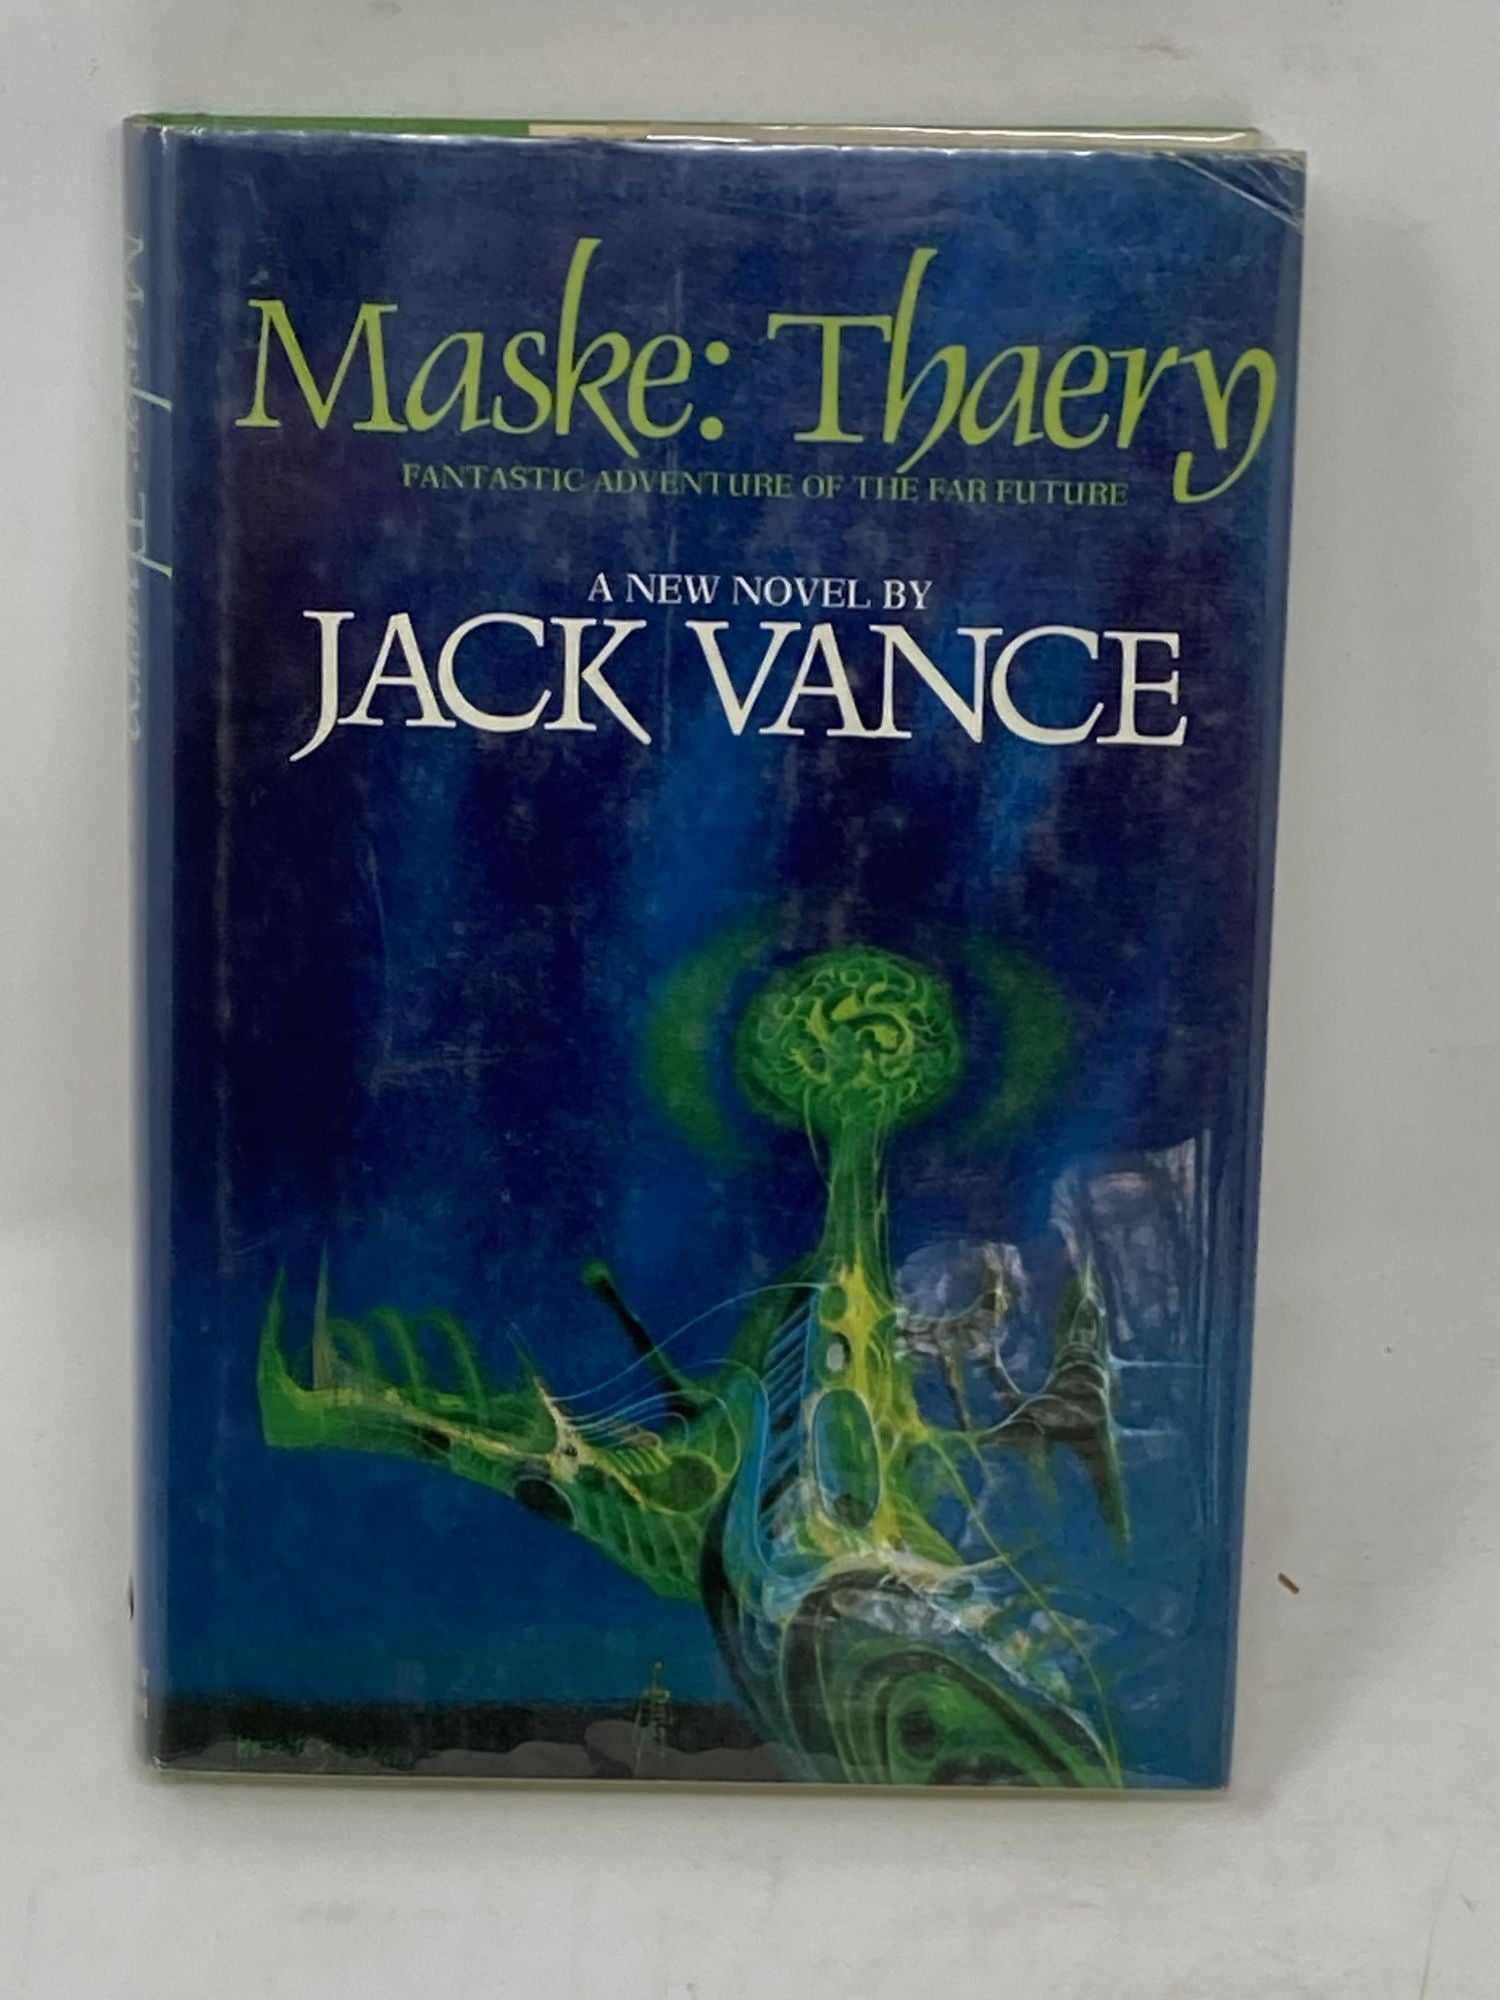 Vance, Jack - Maske: Thaery (Signed)